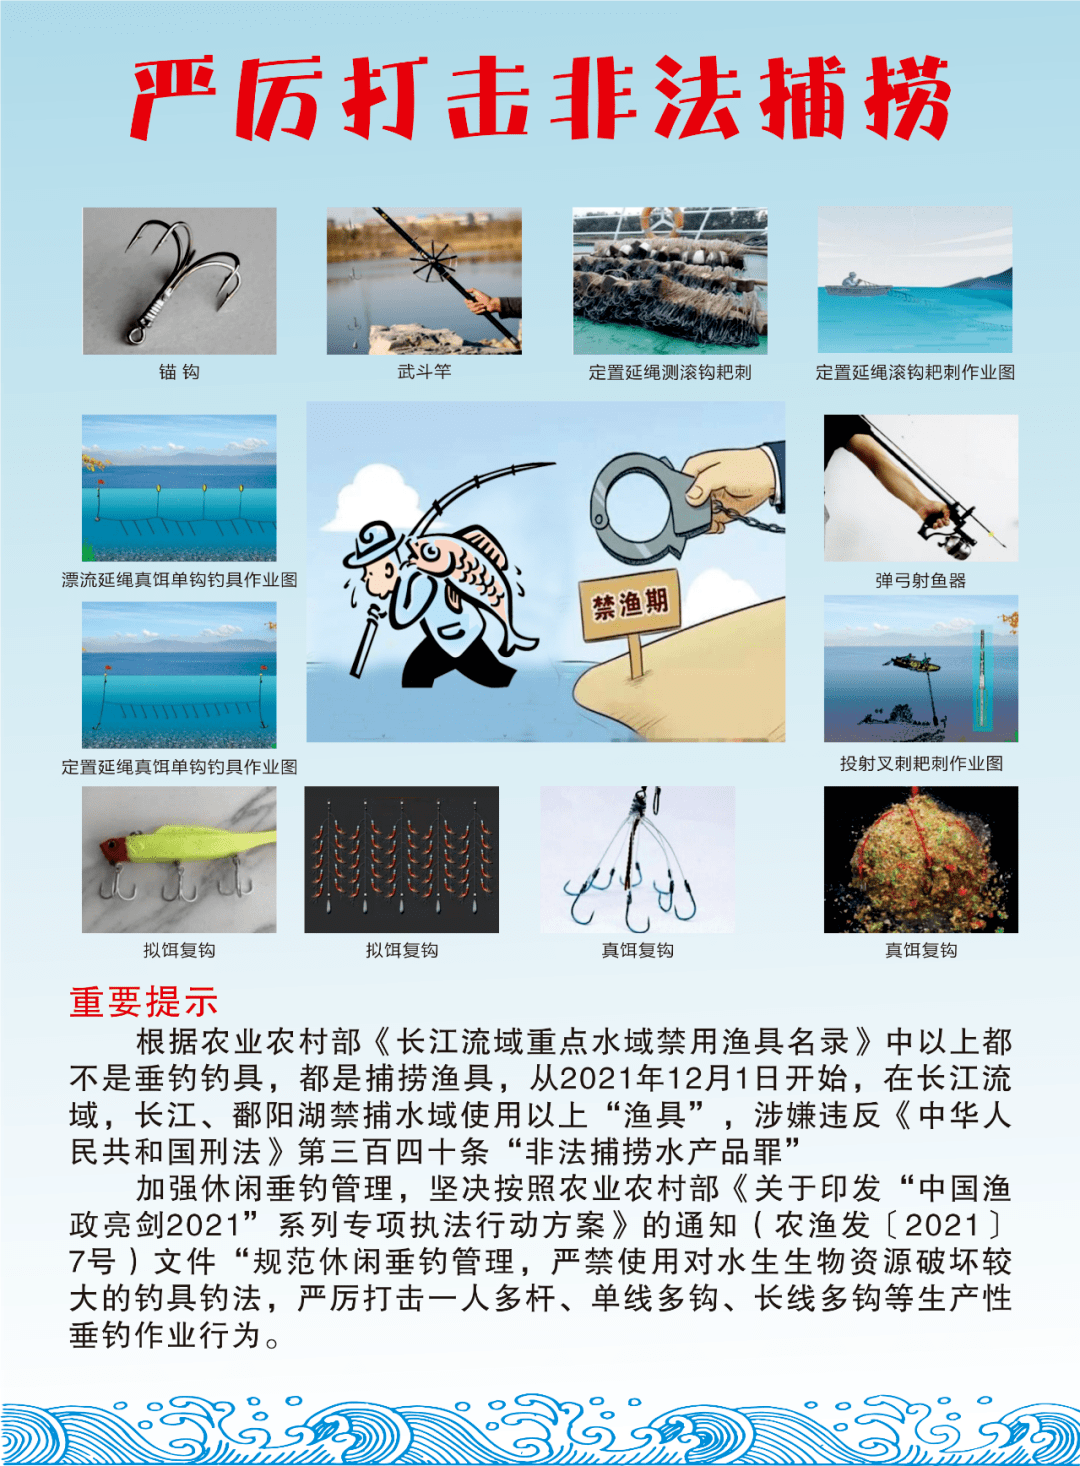 《农业农村部关于发布长江流域重点水域禁用渔具名录的通告》2021年12